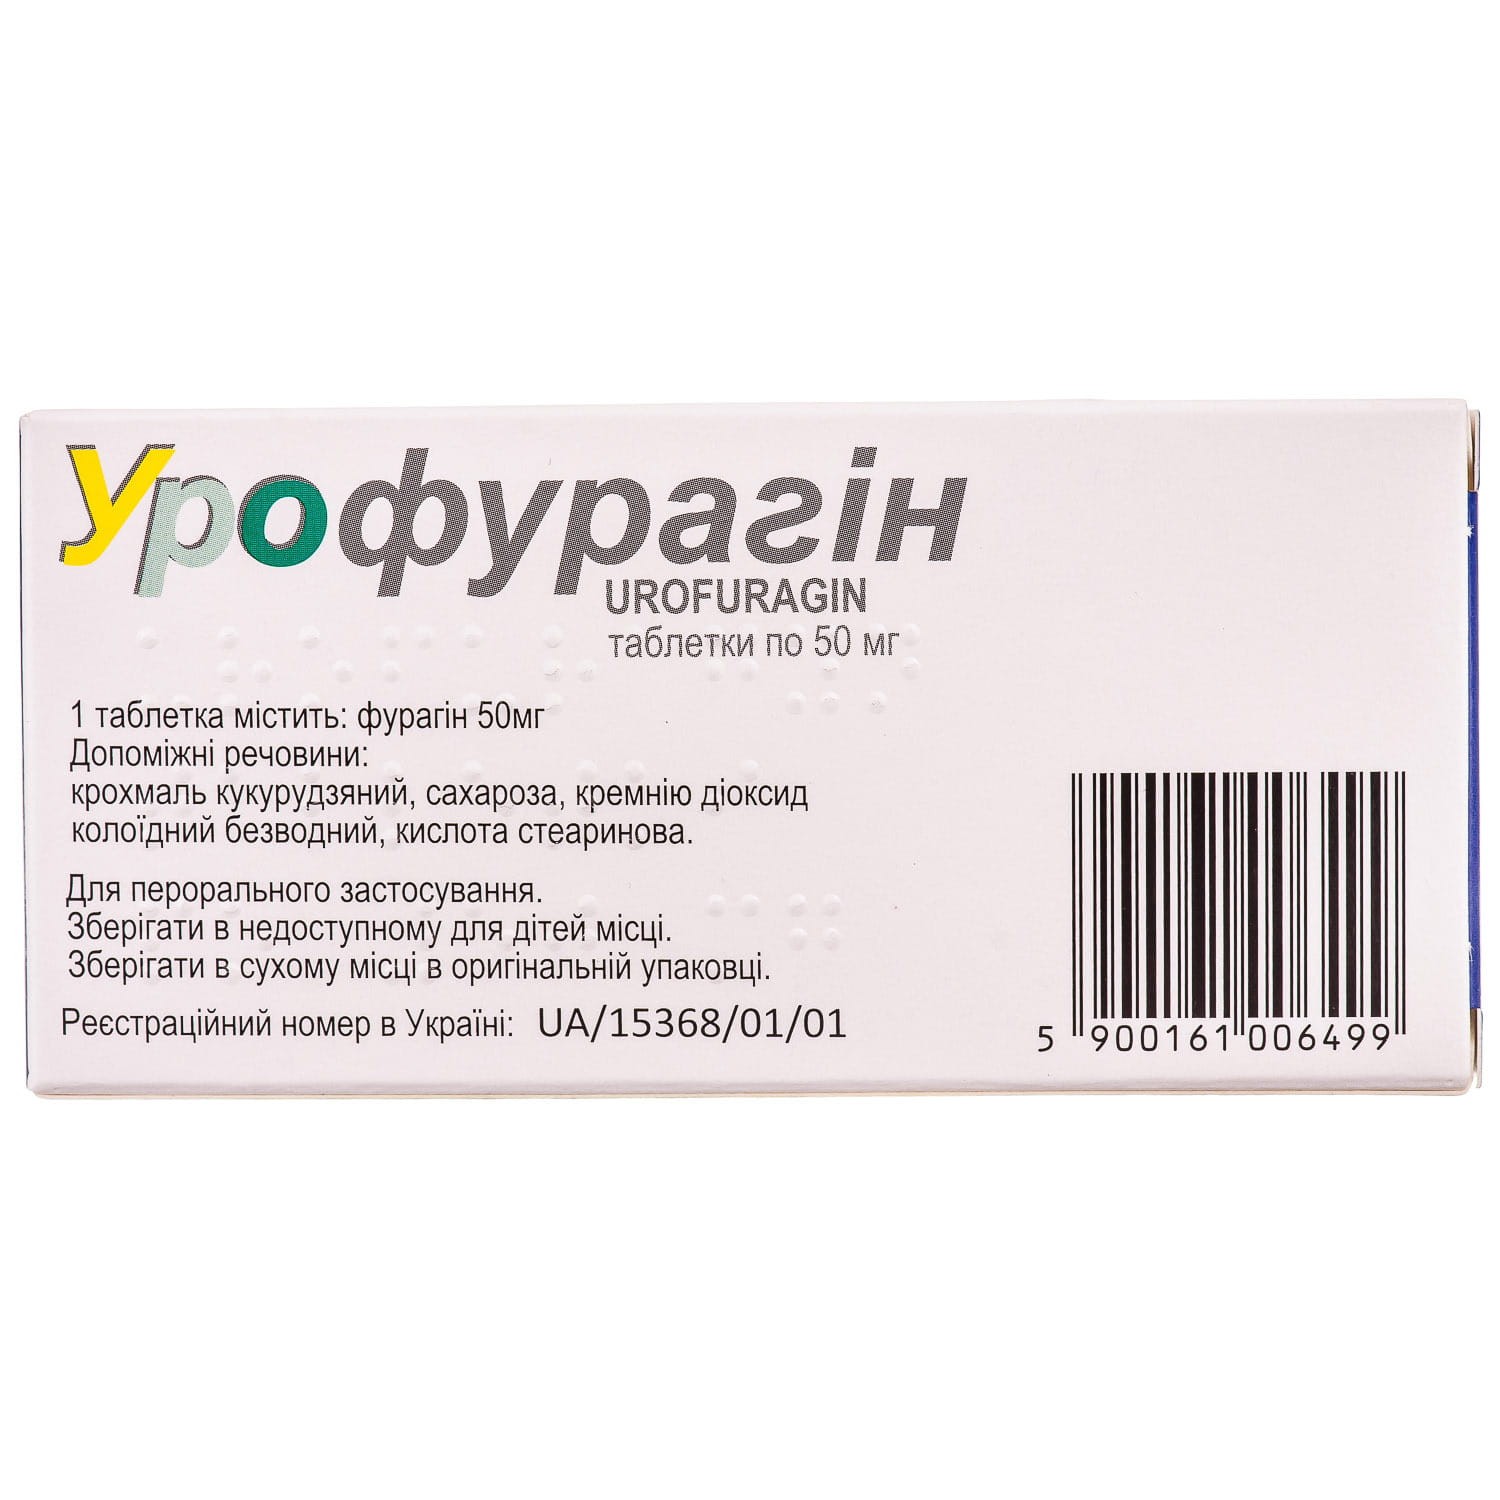 Урофурагин таблетки по 50 мг, 30 шт.: инструкция, цена, отзывы, аналоги .